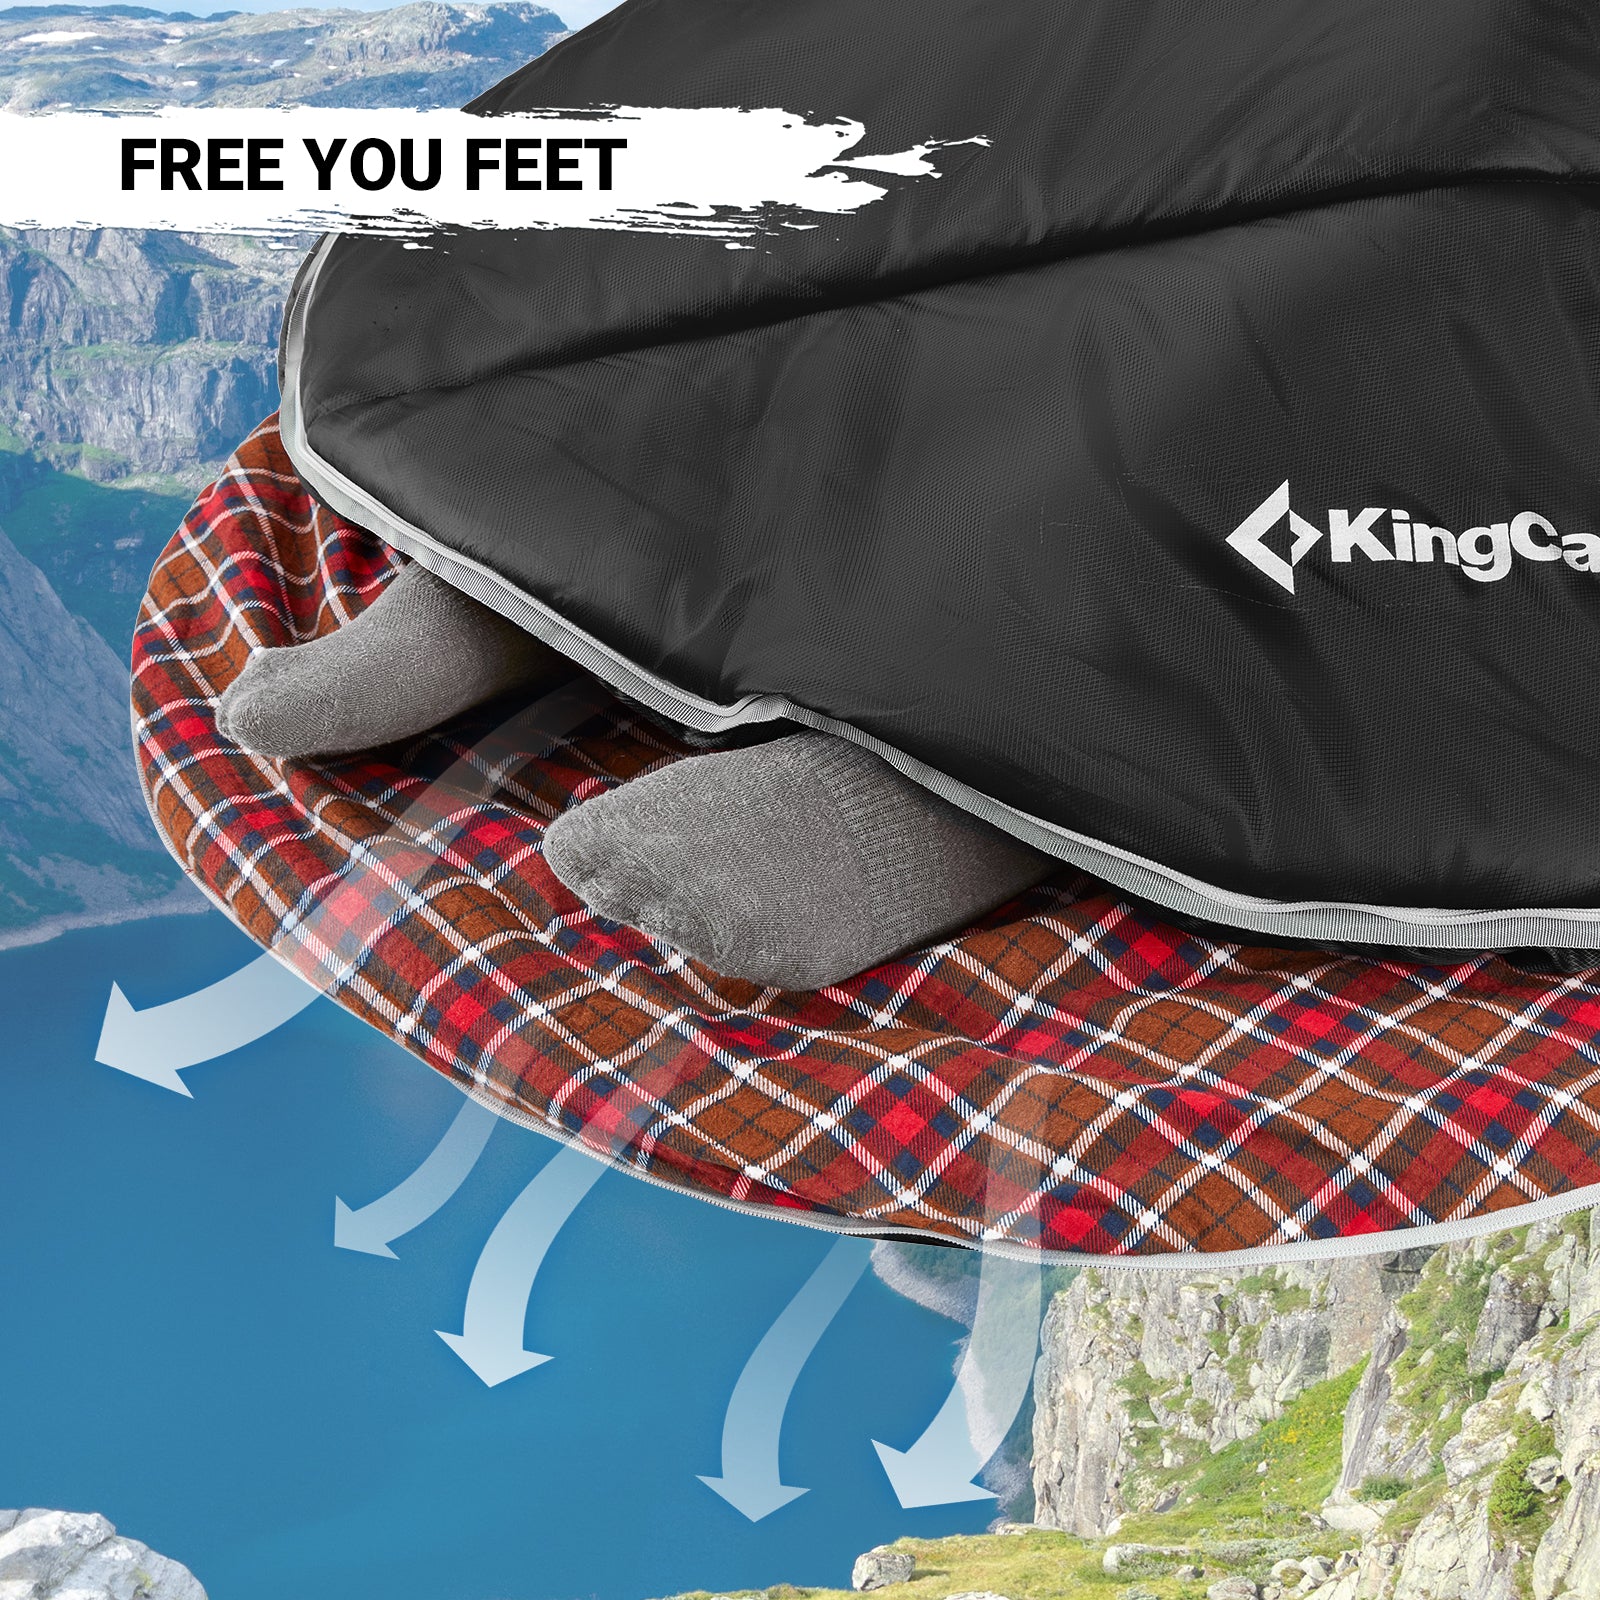 KingCamp 350g Filling Plus Size 3-4 Season Black Sleeping Bag